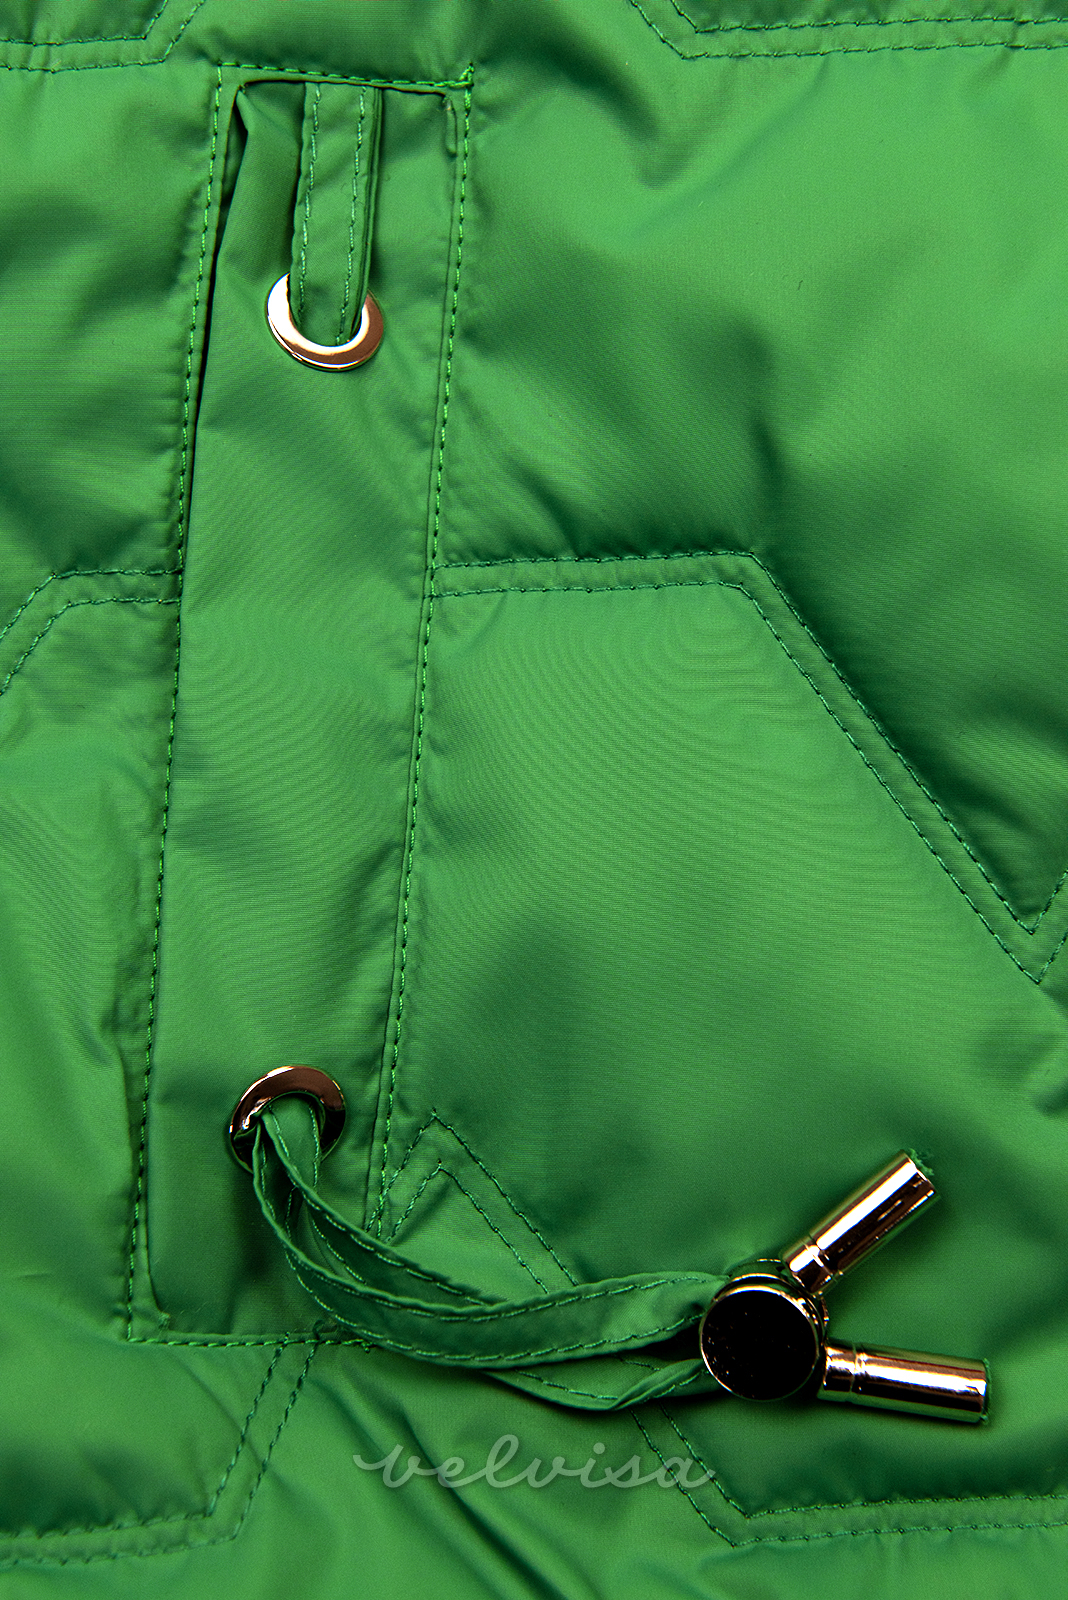 Zelena prehodna jakna s karirasto obrobo